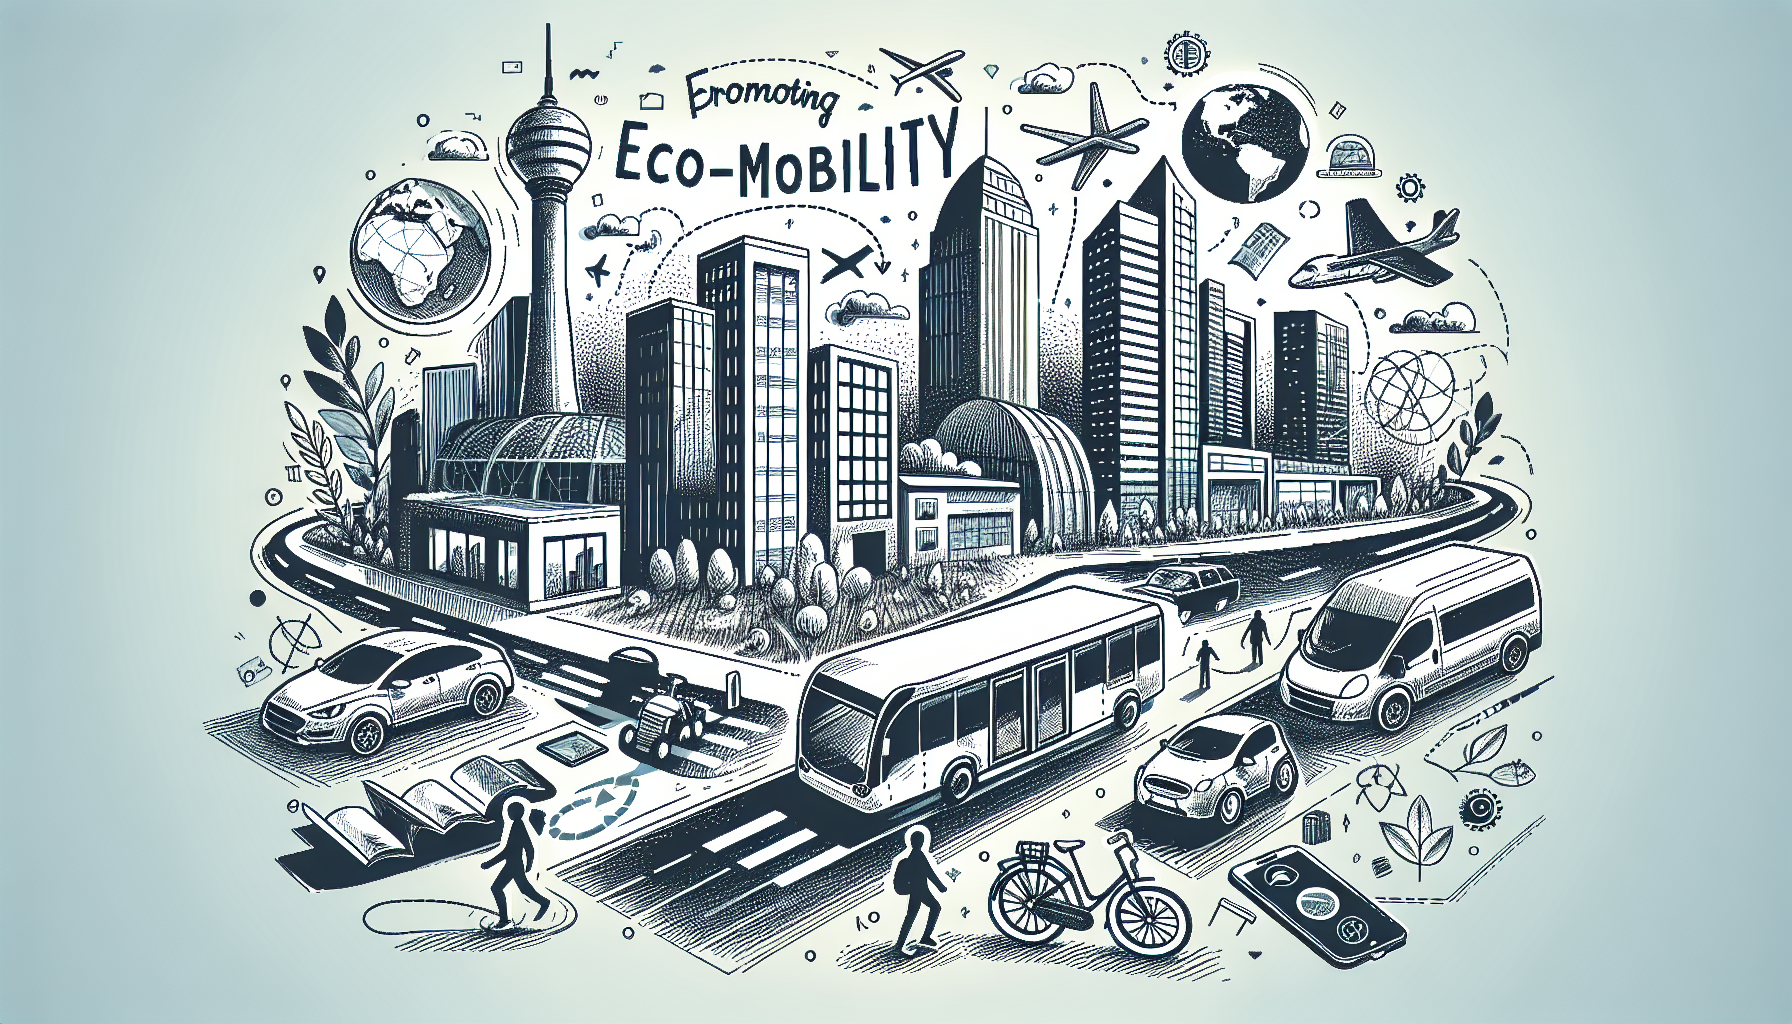 découvrez les meilleures solutions pour favoriser l'éco-mobilité en milieu urbain et contribuer à un environnement plus durable. explorez des idées innovantes pour promouvoir la mobilité écologique dans nos villes.